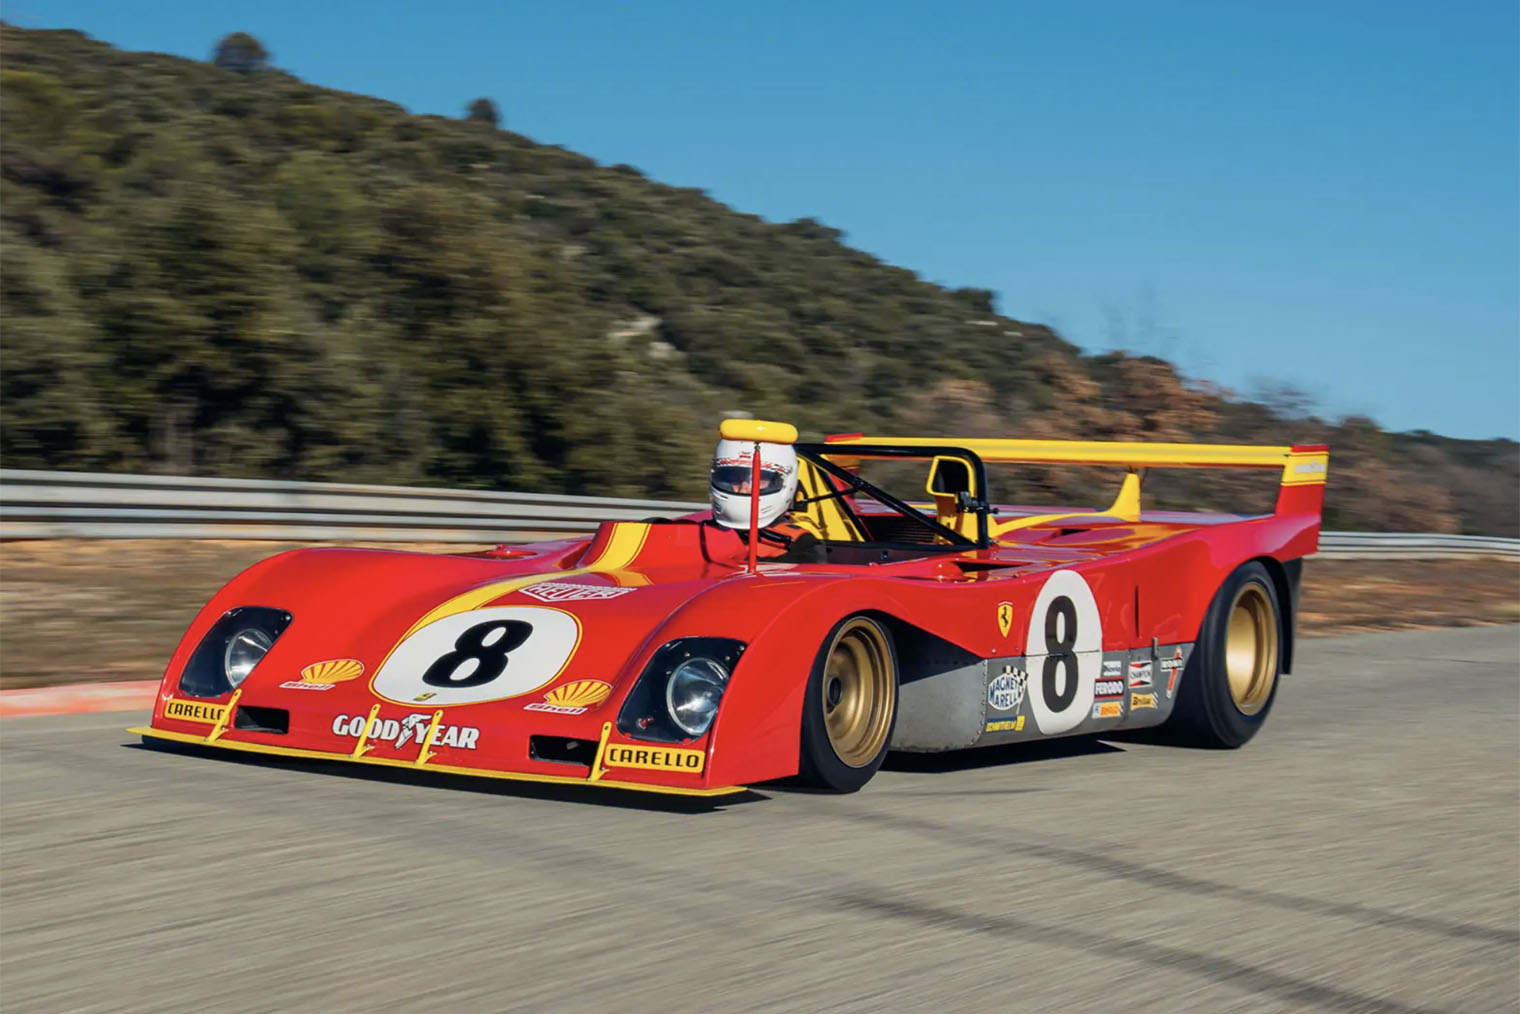 312 PB — последний и самый успешный спортпрототип заводской команды Ferrari. В 1972 году на этапах чемпионата мира эта машина дважды пришла первой. Источник: rmsothebys.com